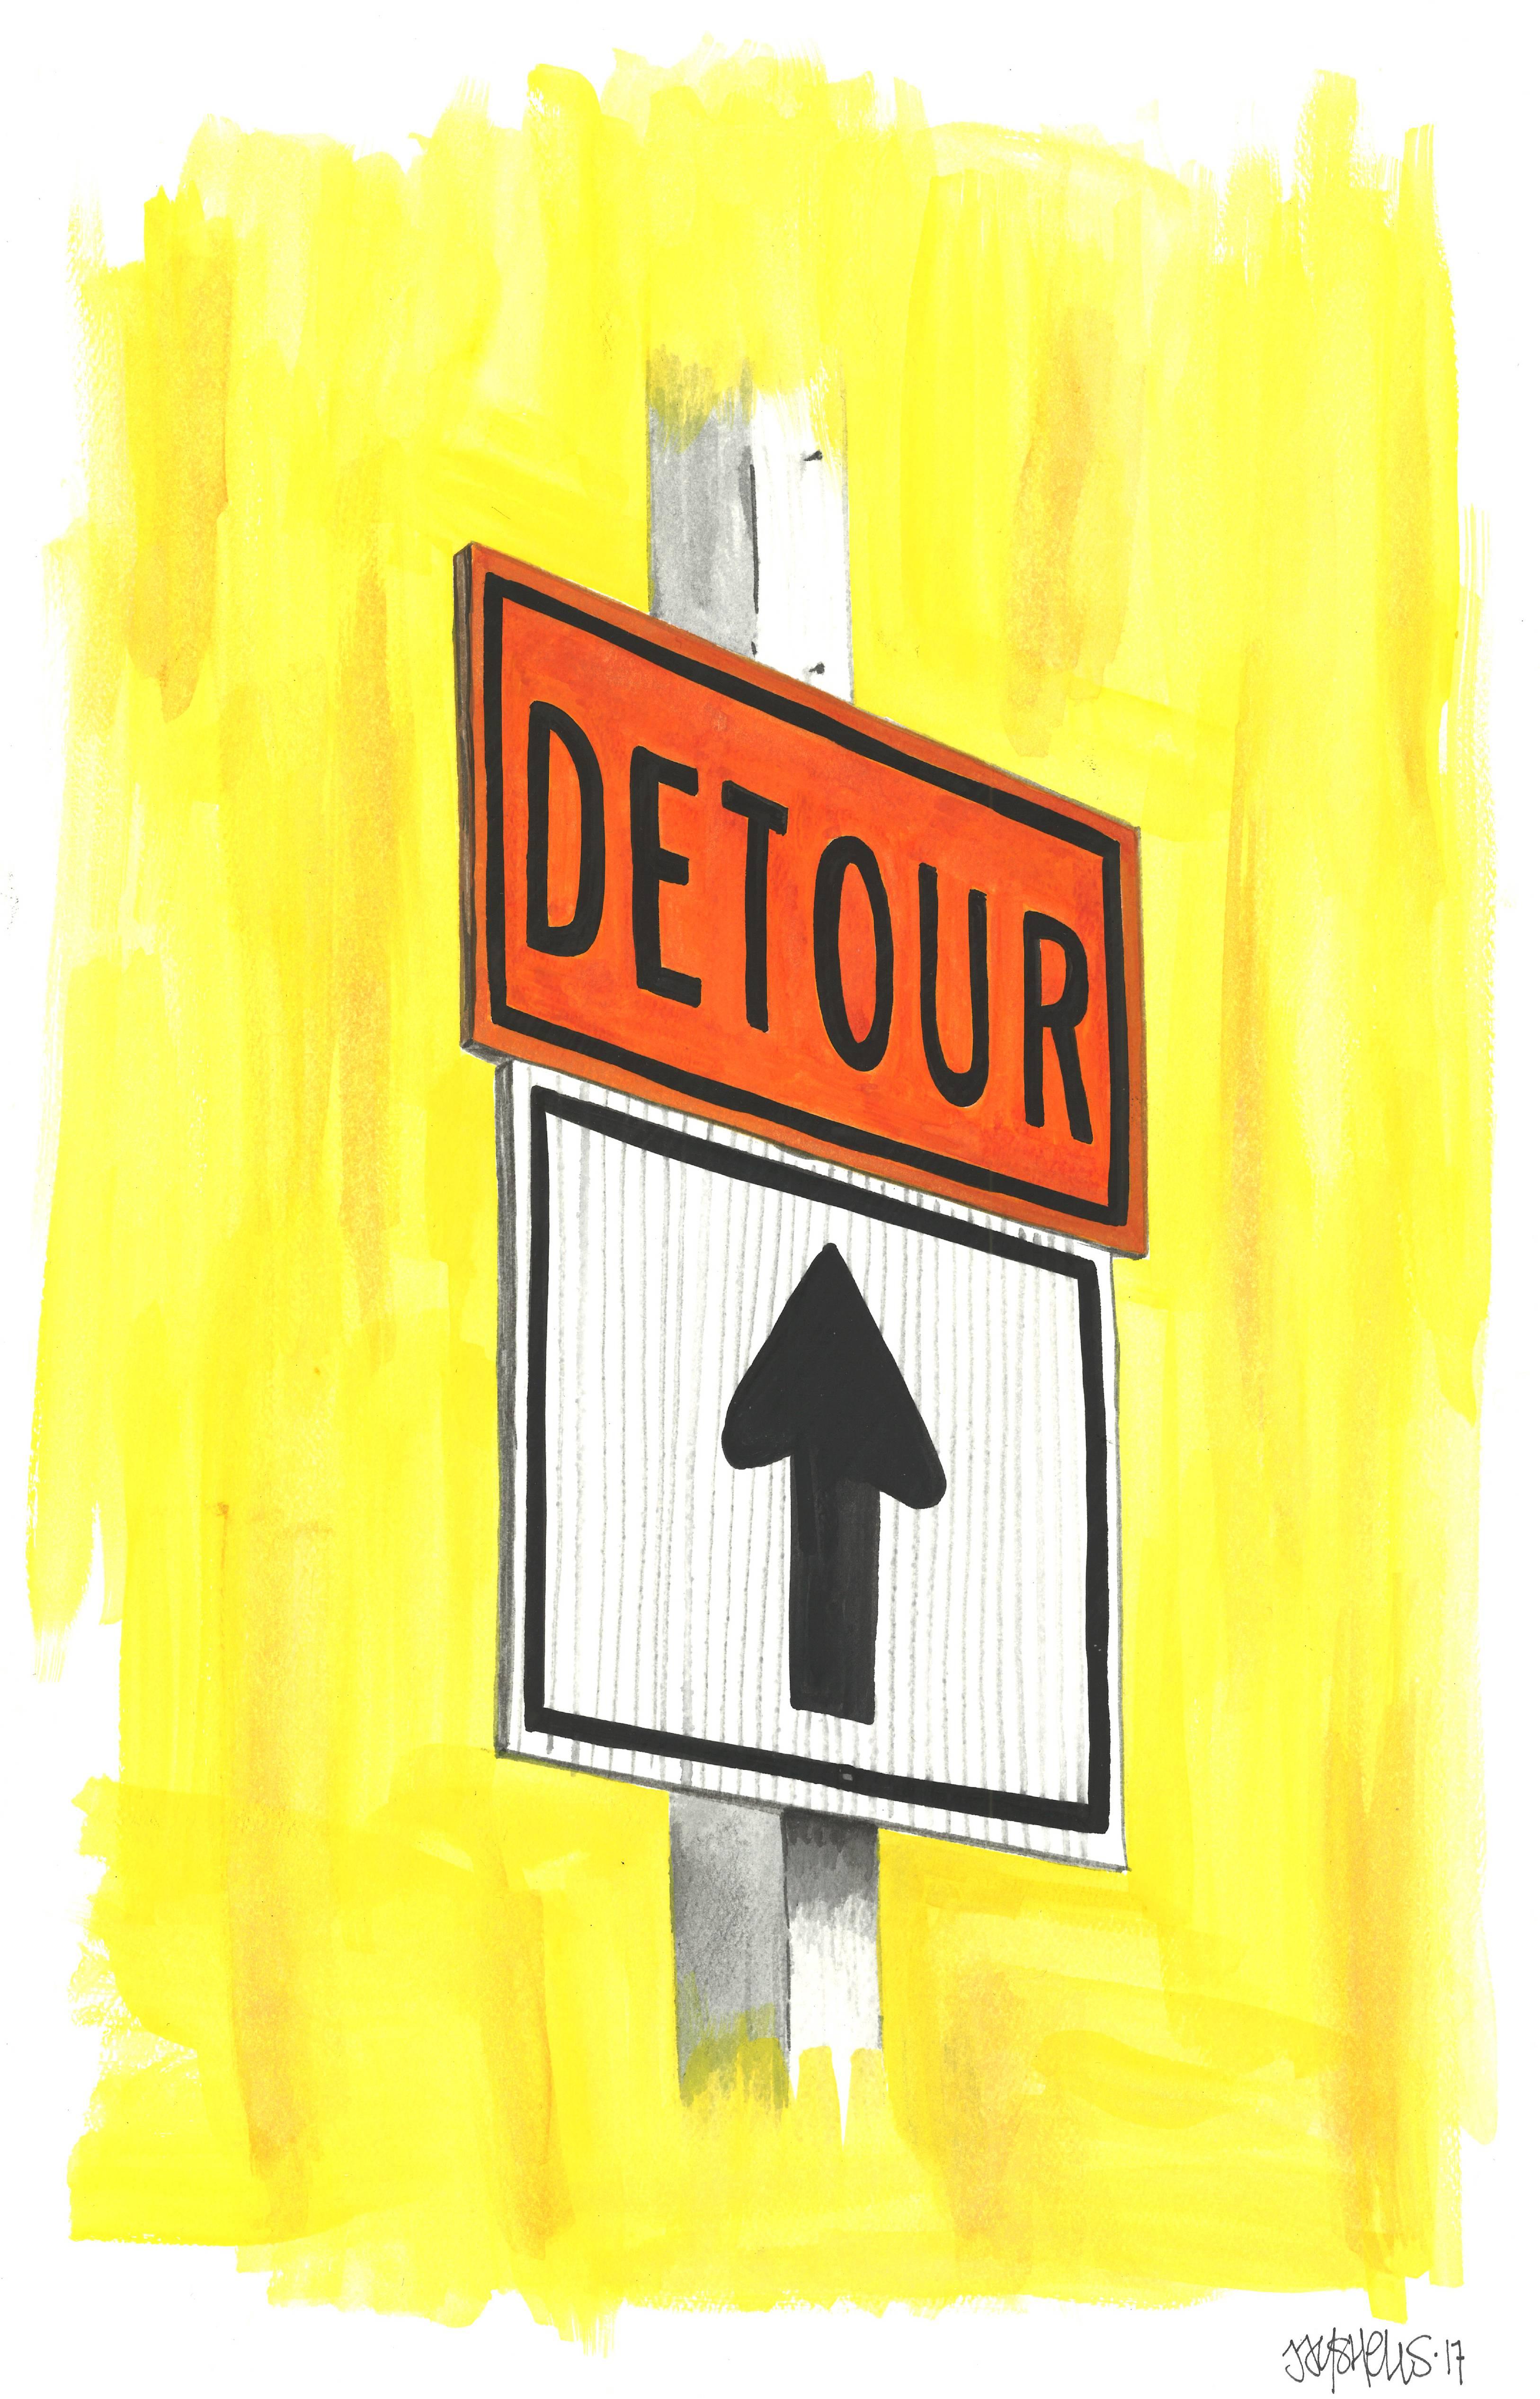 Detour - Art by Jason Shelowitz